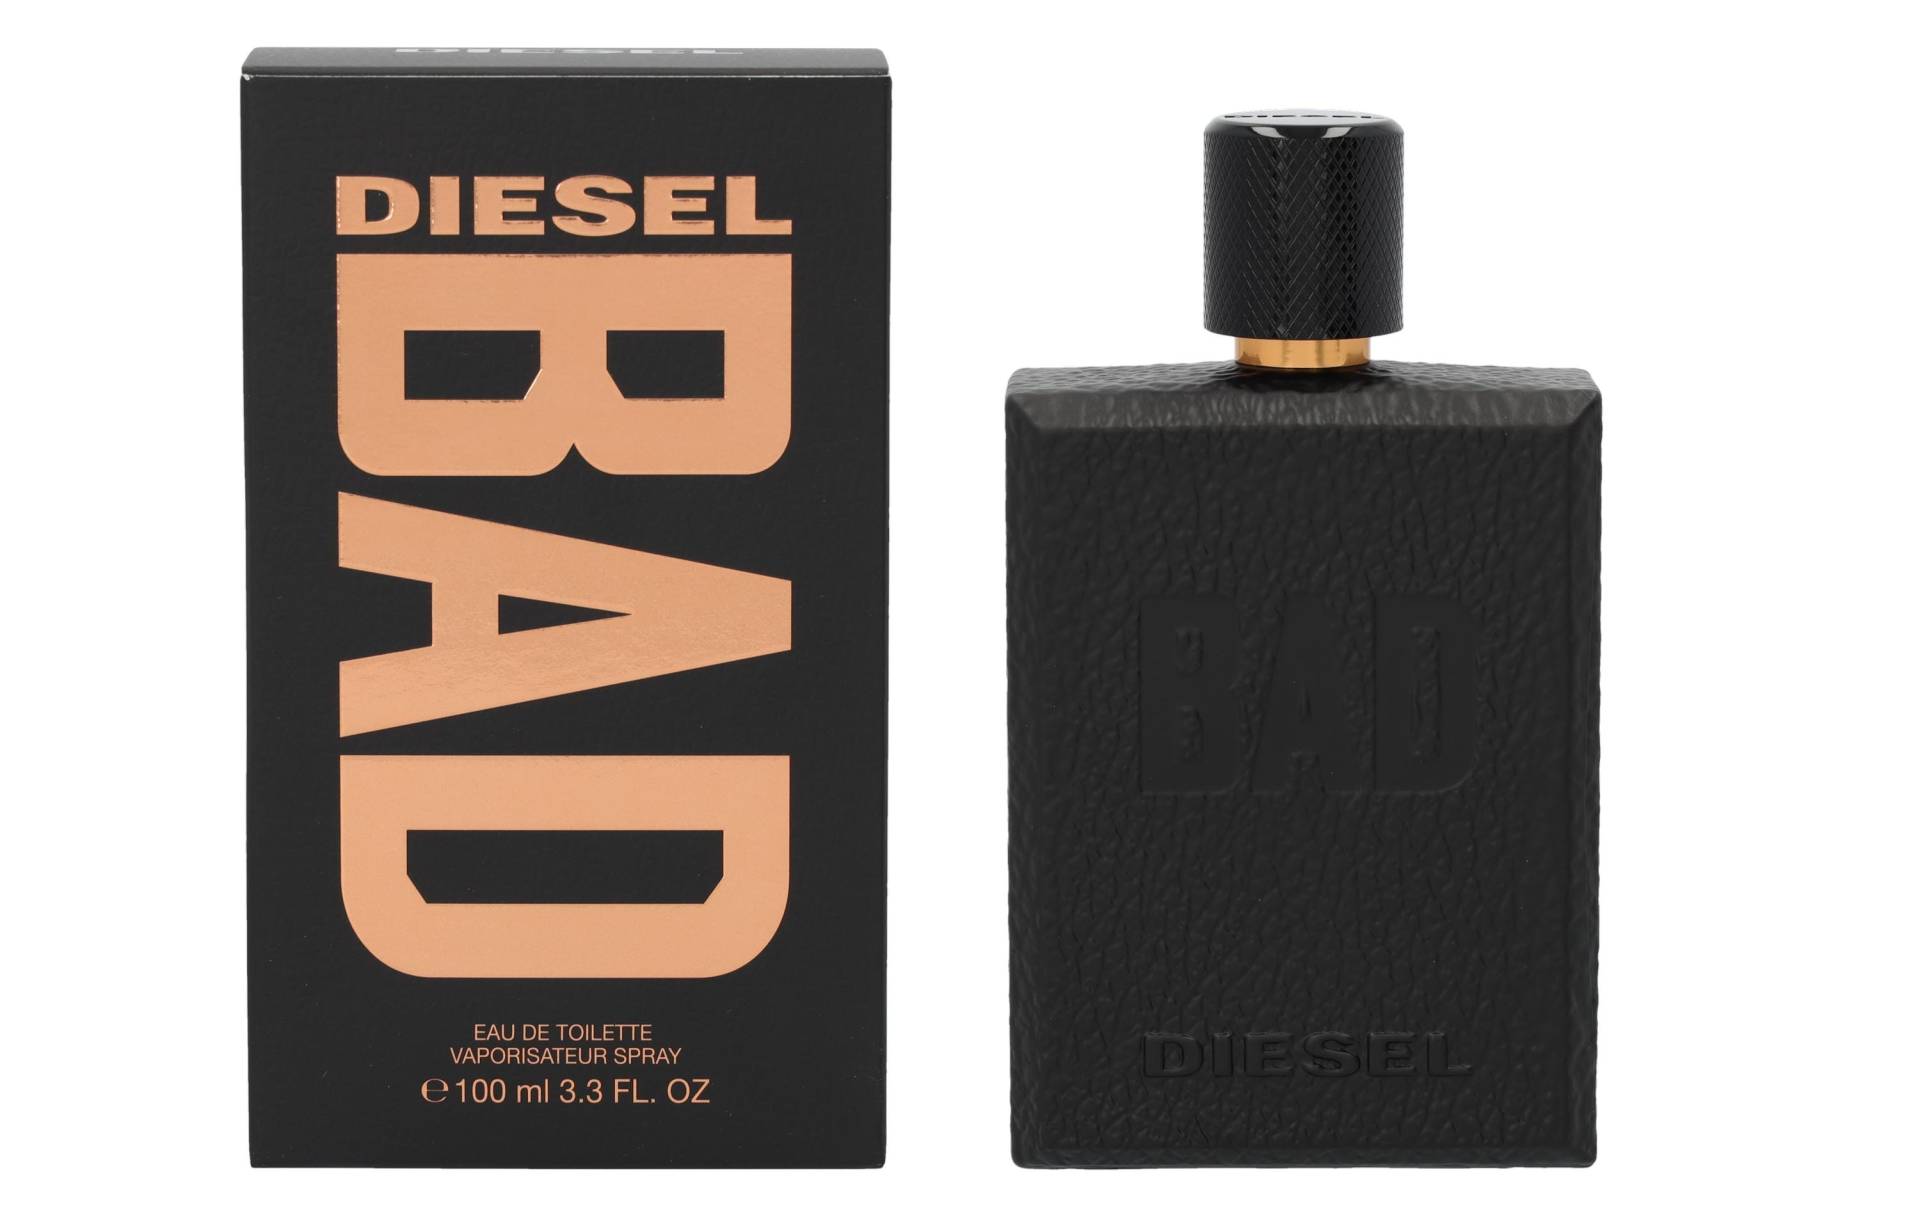 Diesel Eau de Toilette »Bad 100 ml« von Diesel